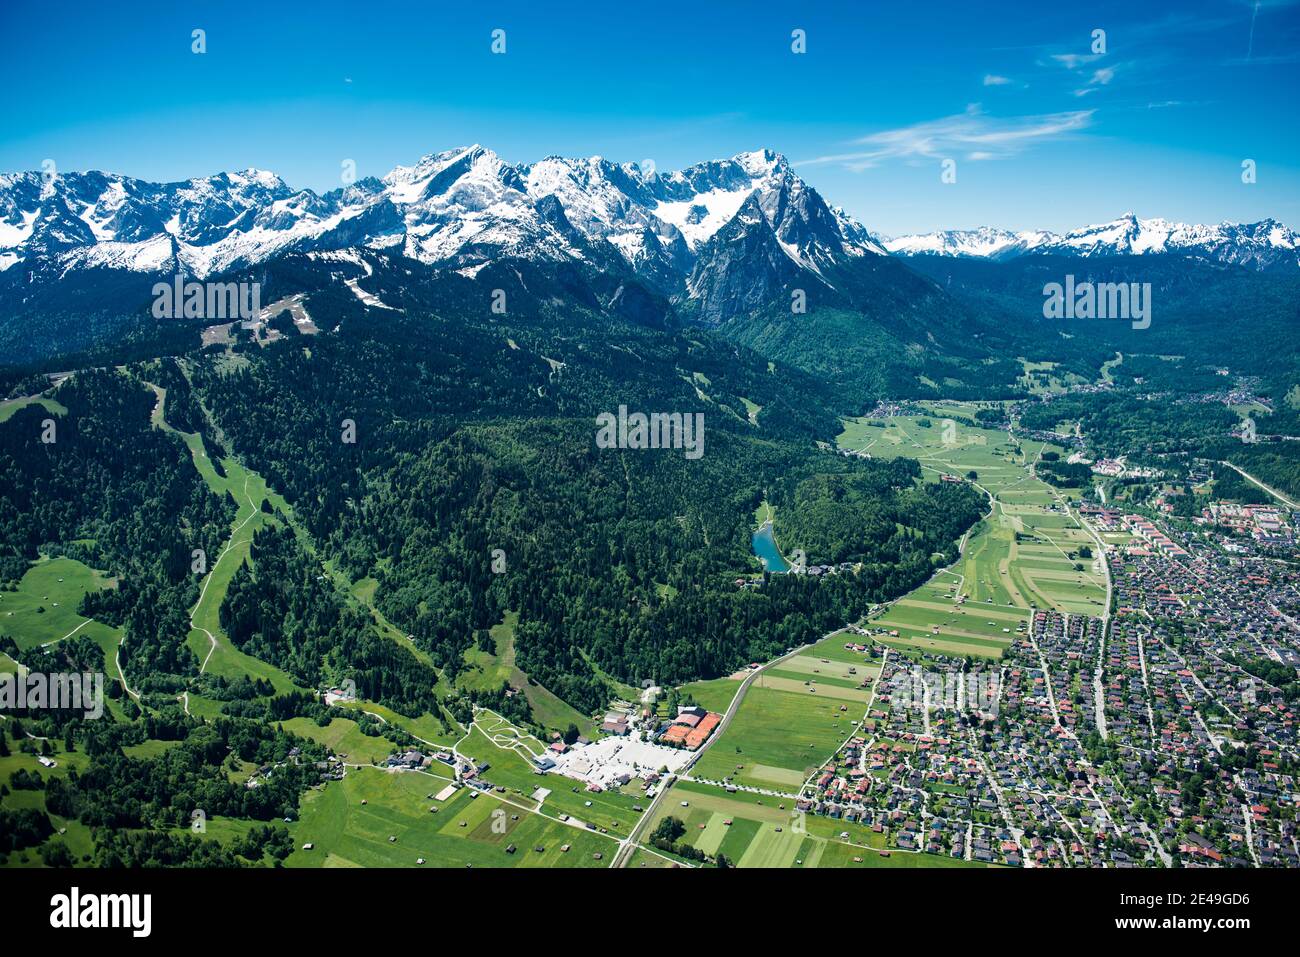 Hausberg, Riessersee, Garmisch, Alpspitze, Zugspitze, Waxenstein, Höllental, Wetterstein Mountains, Garmisch-Partenkirchen, aerial view, Werdenfelser Land, Oberland, Bavaria, Germany Stock Photo